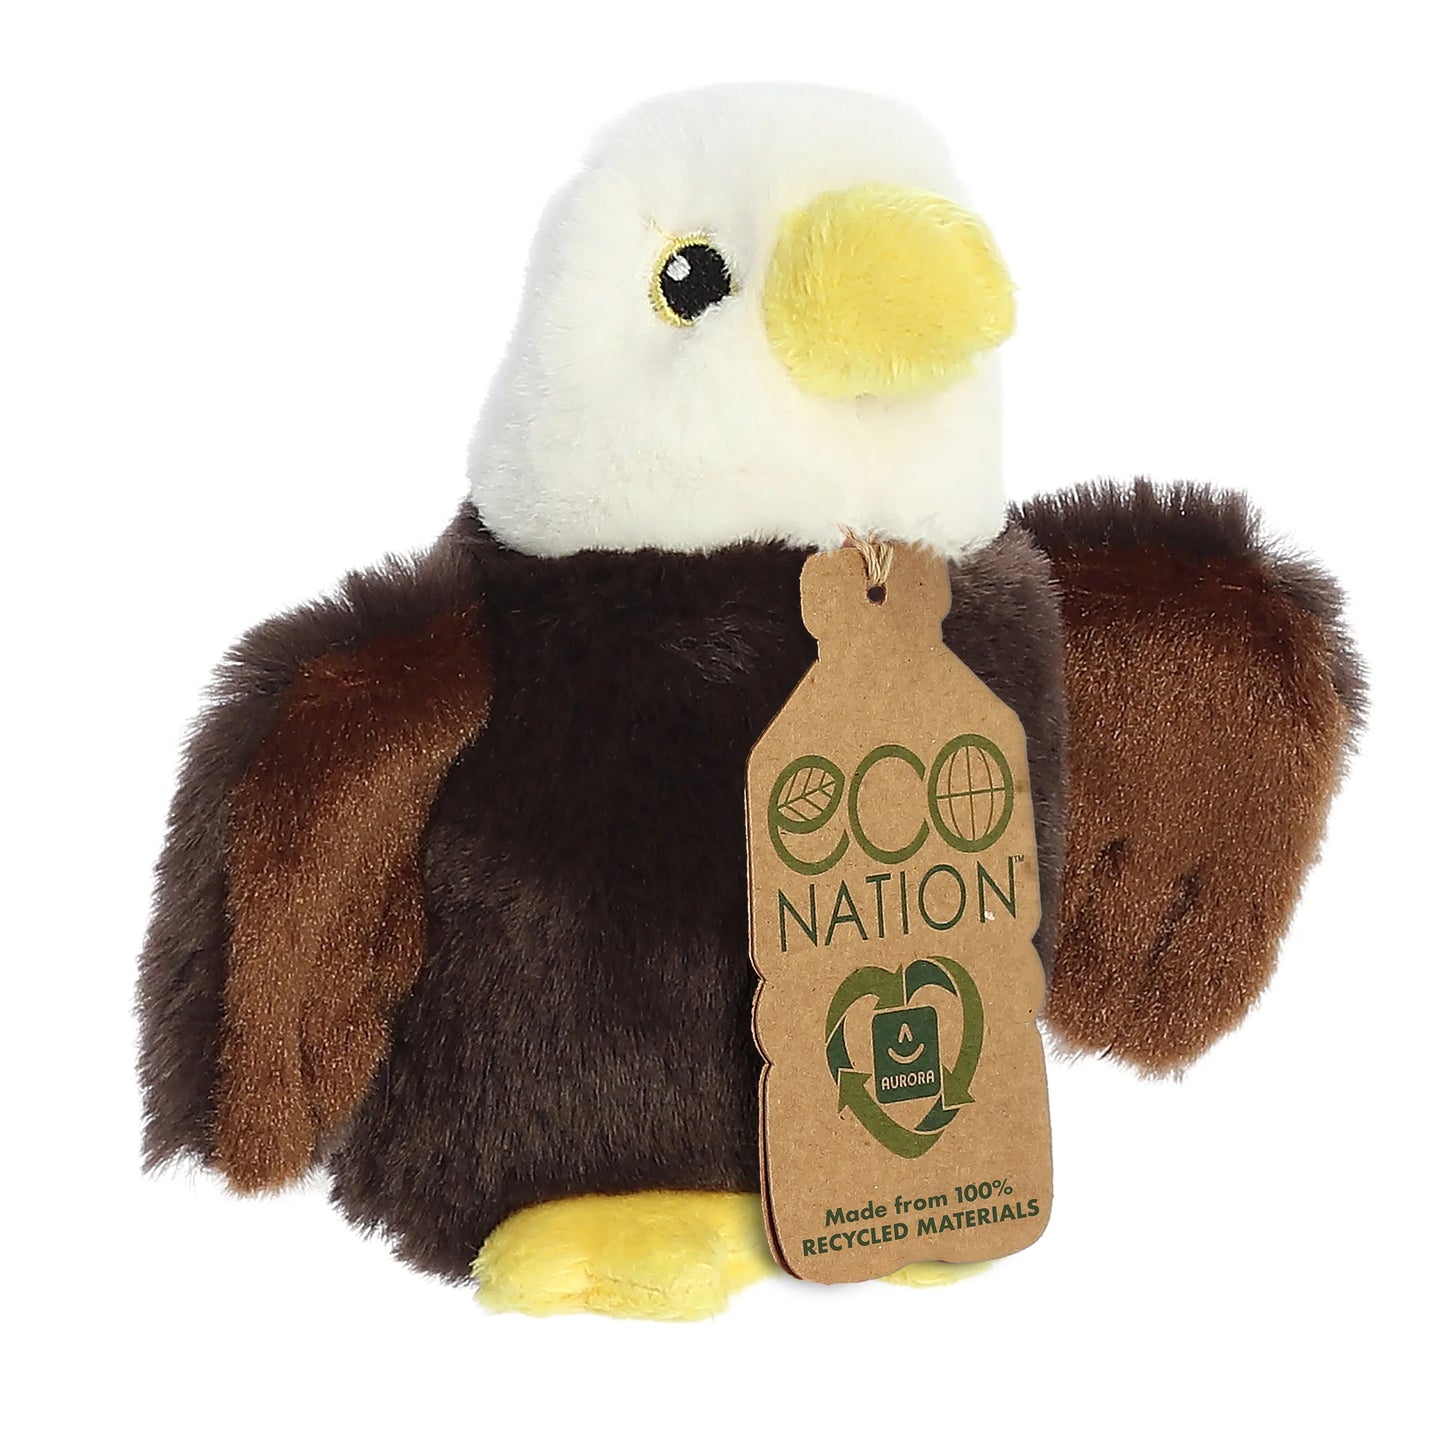 Eco Nation - 5" Mini Eagle